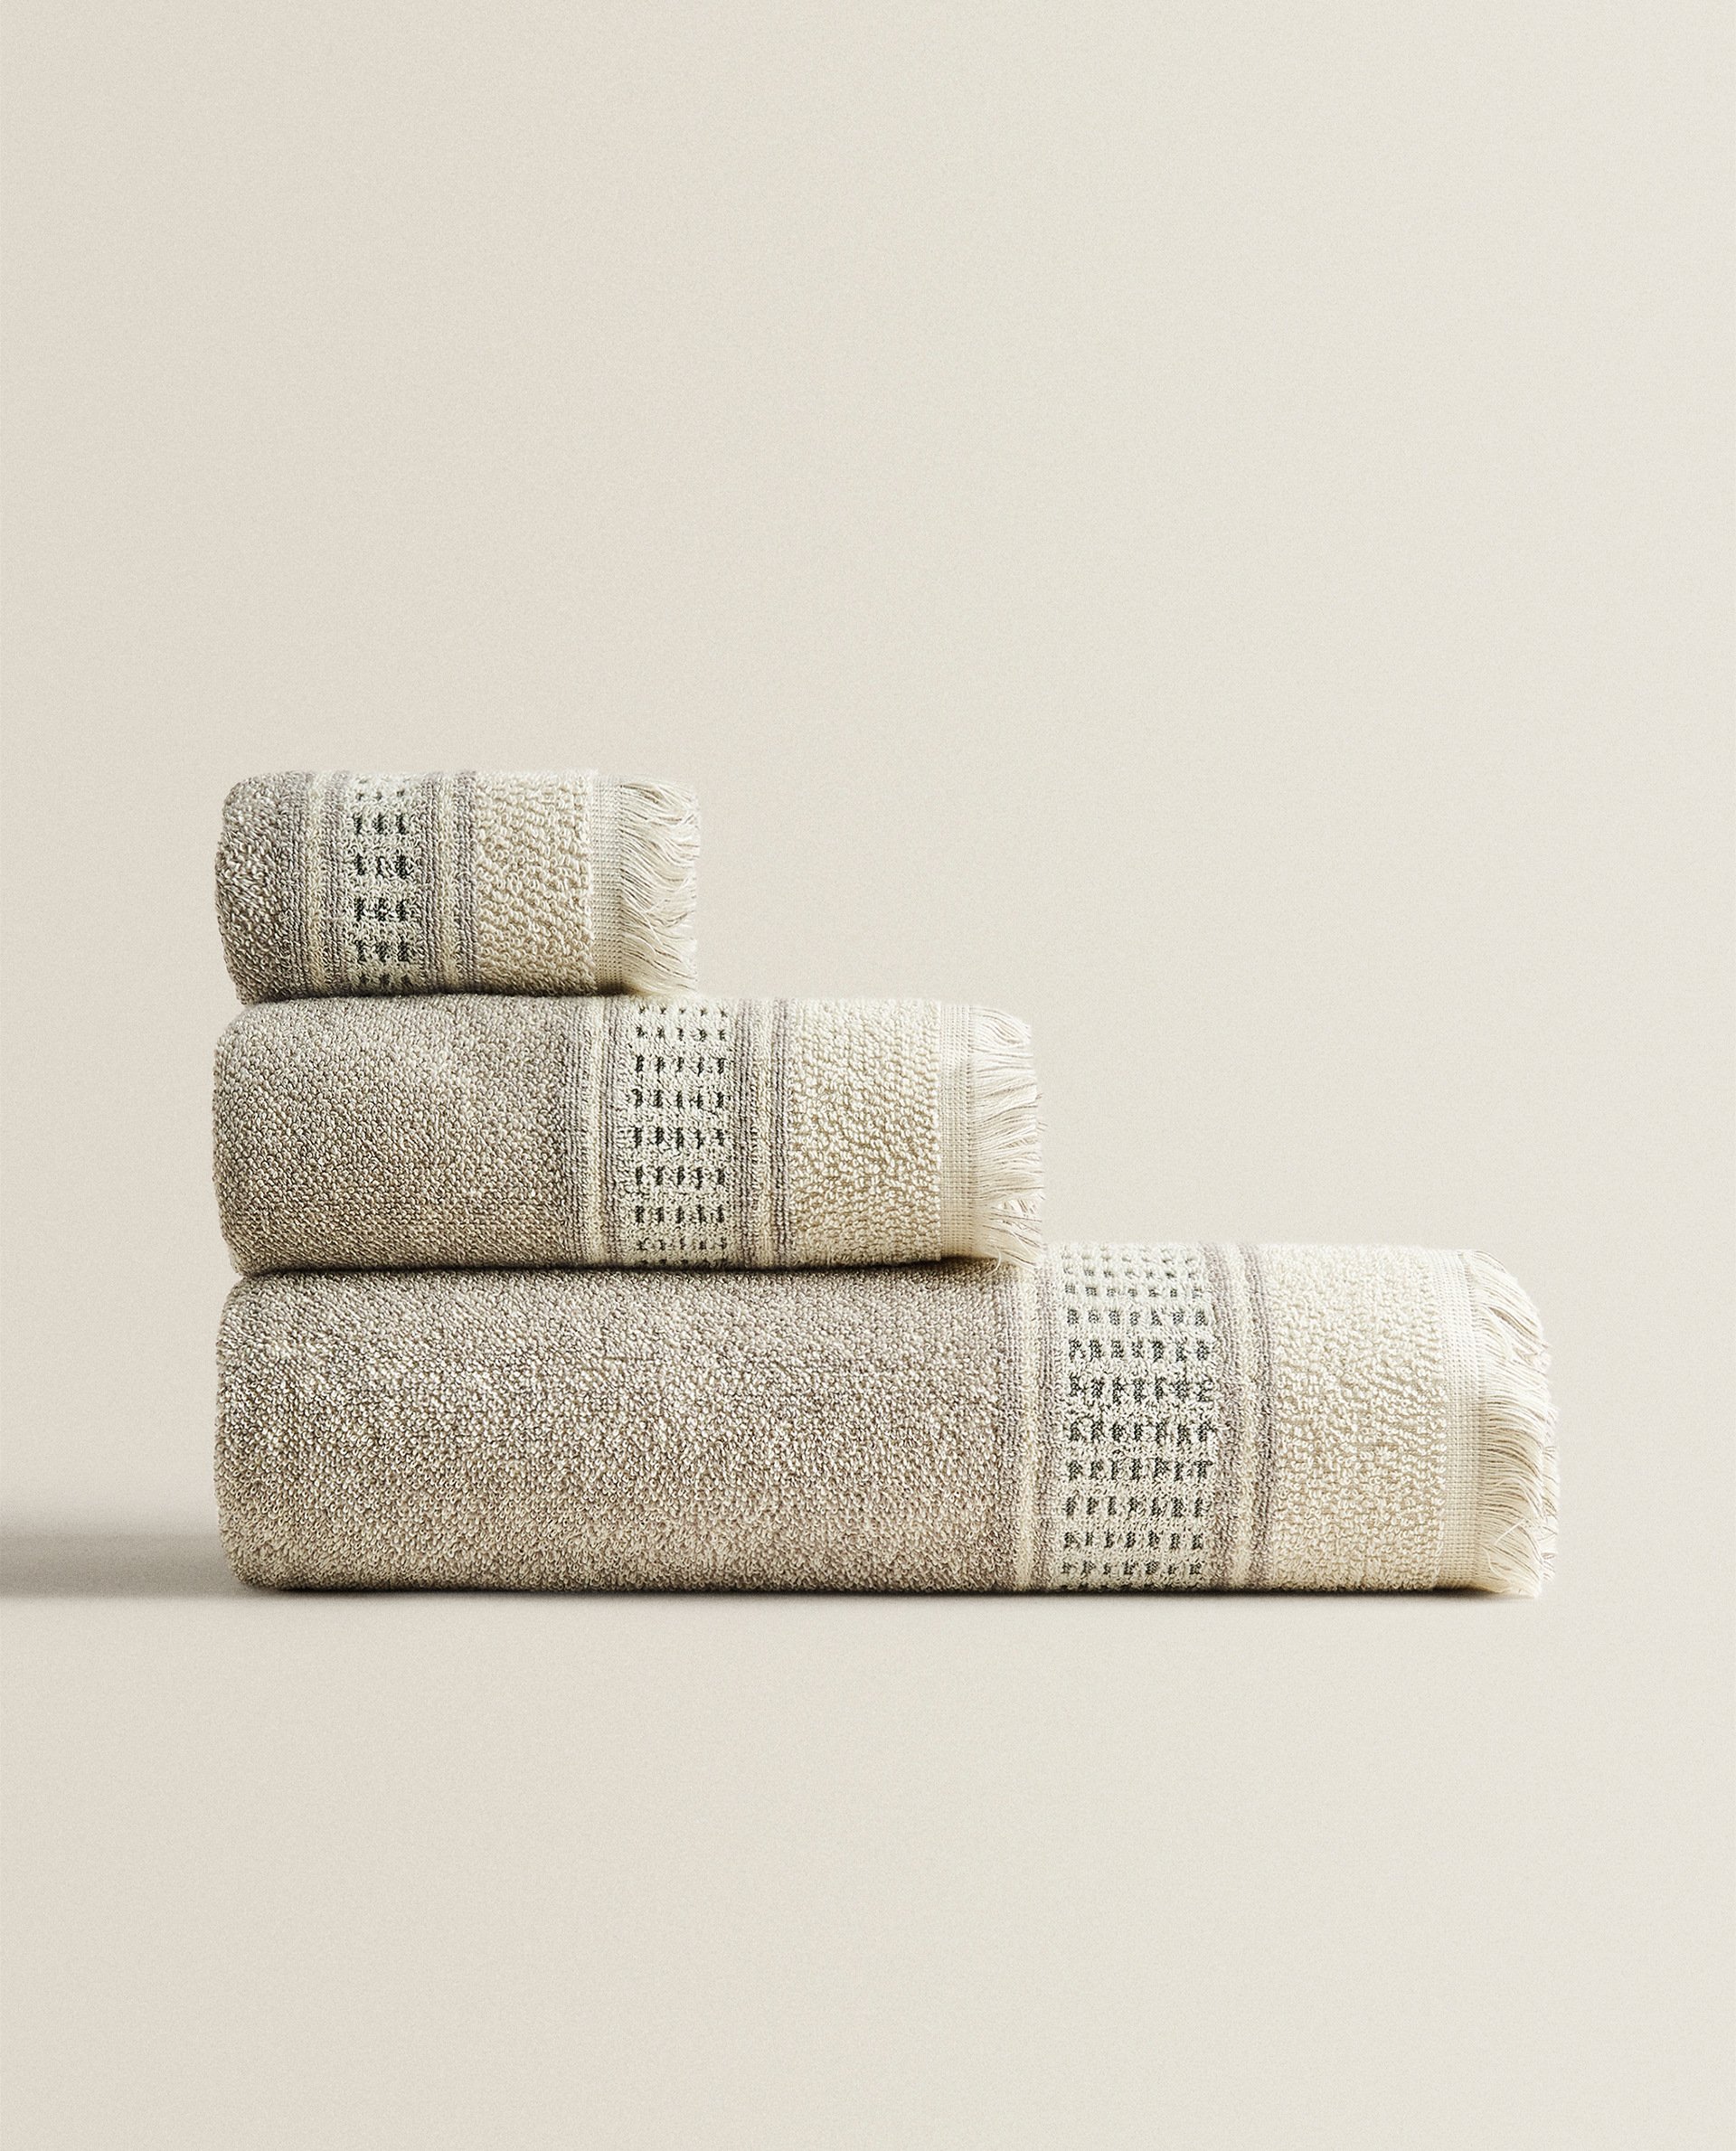 MELANGE TOWEL - TOWELS - BATHROOM - NEW 